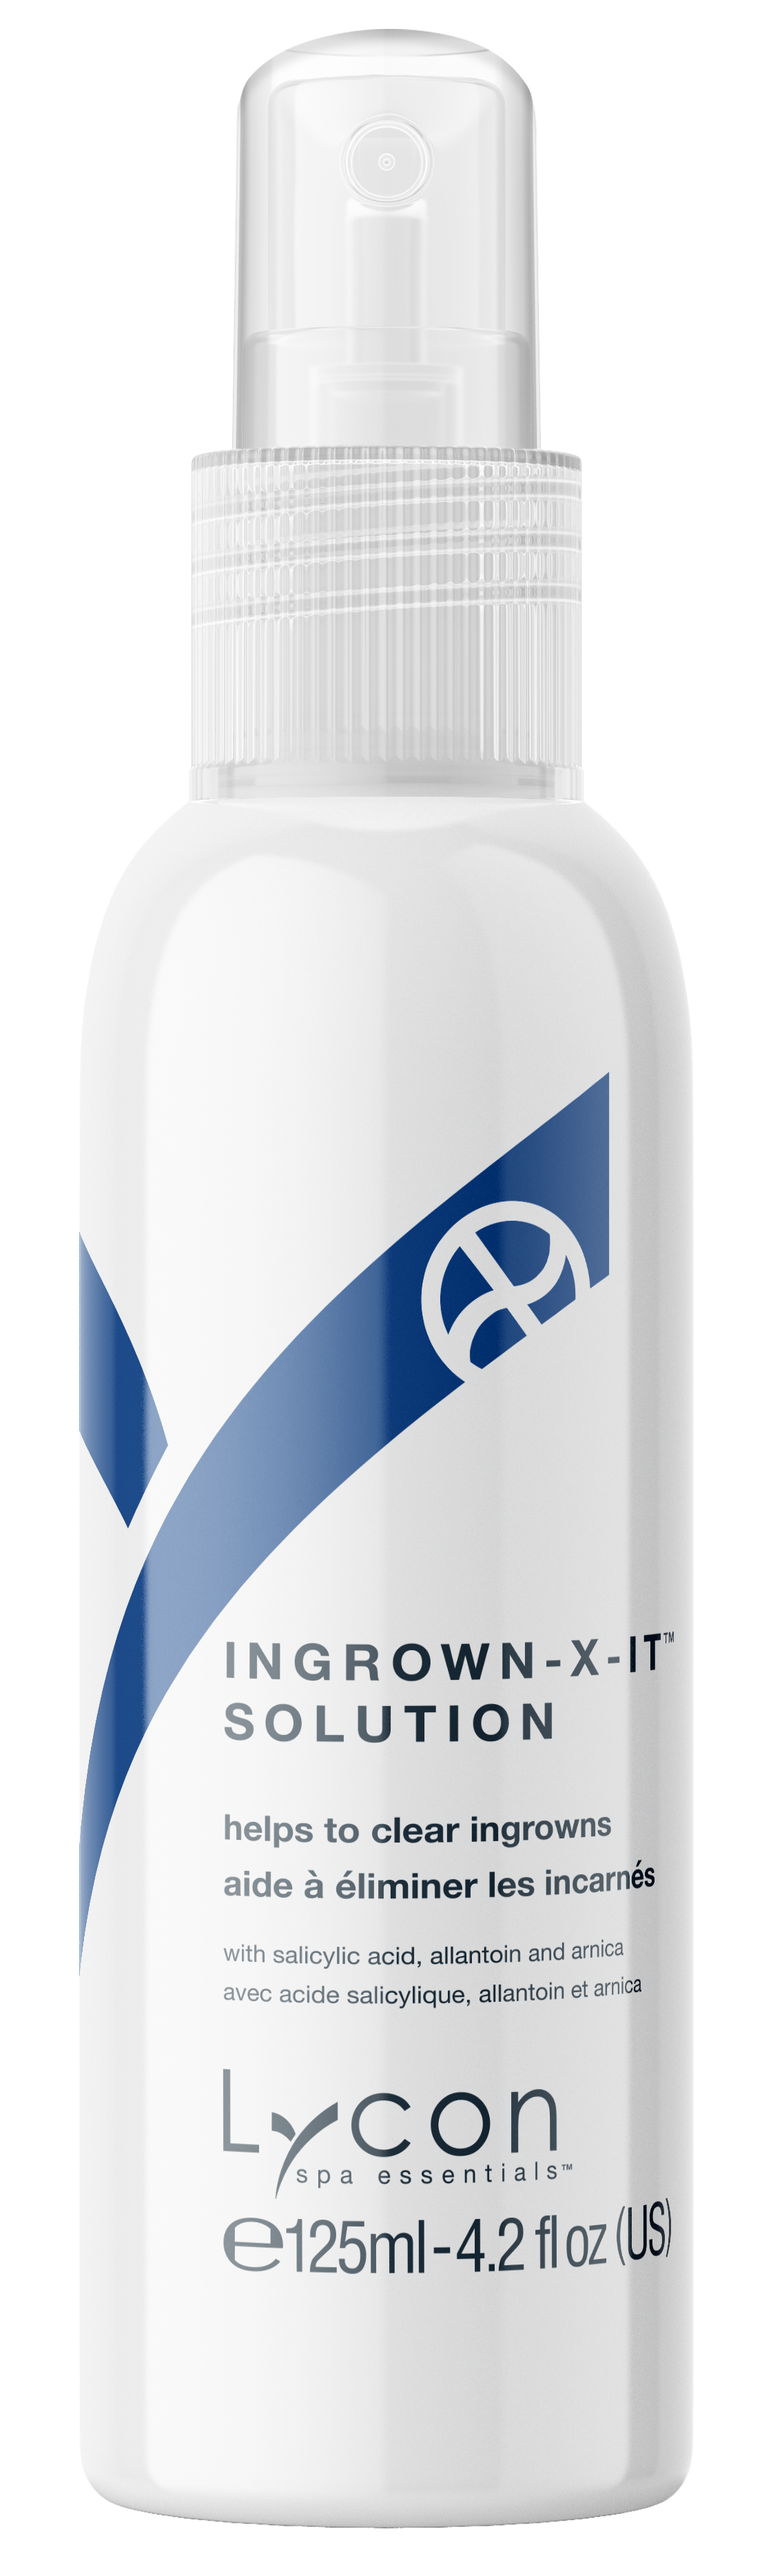 Ingrown-X-It Solution 125ml